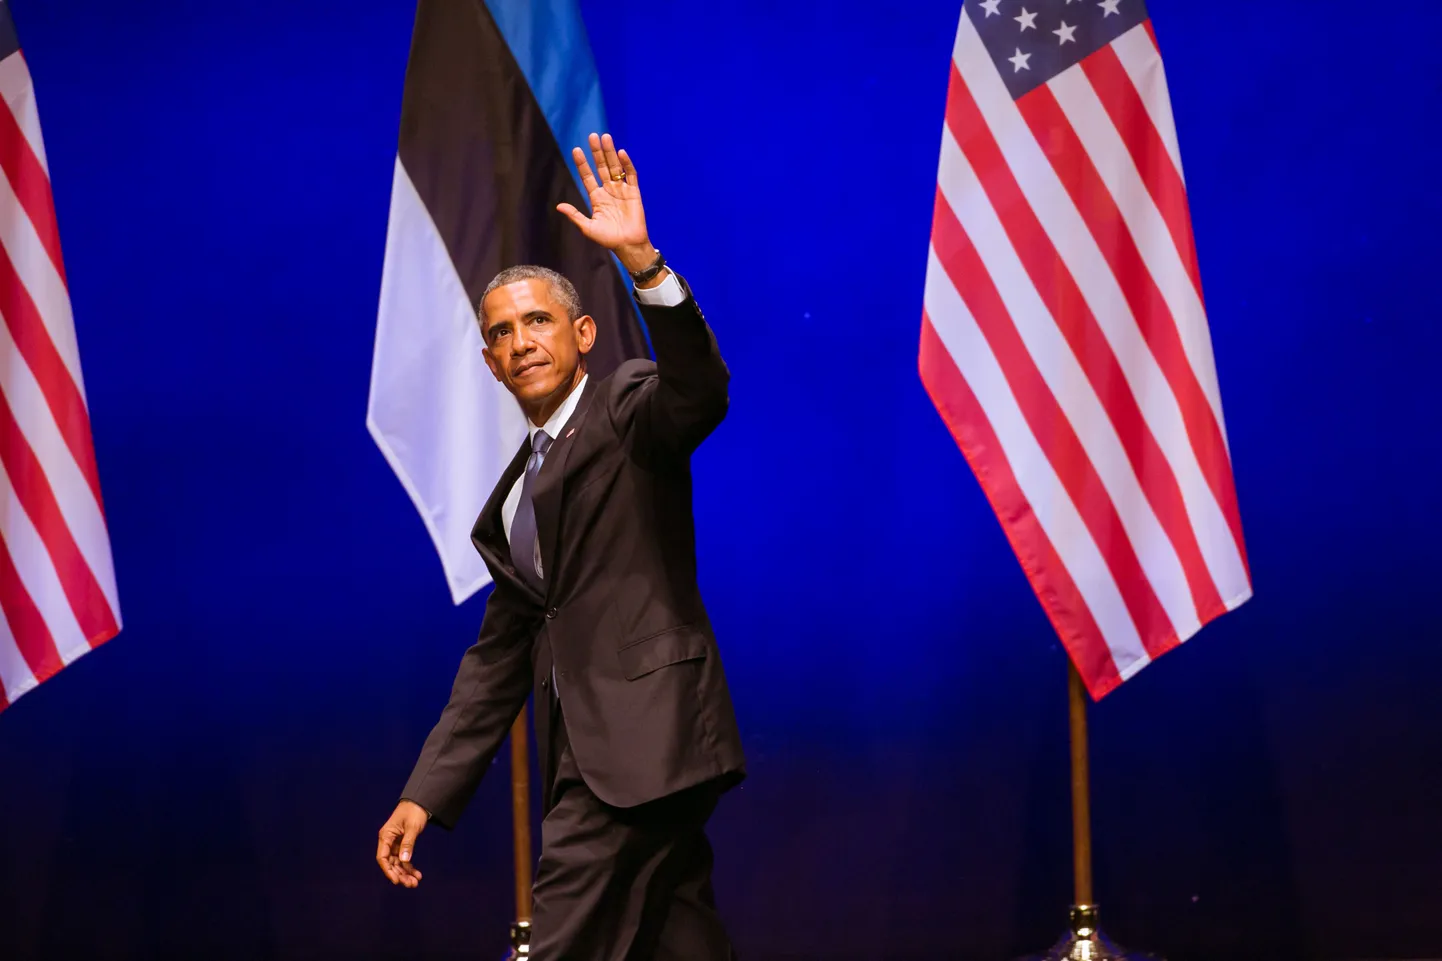 Obama pidas Tallinnas olles kõne Solarise kontserdimajas.